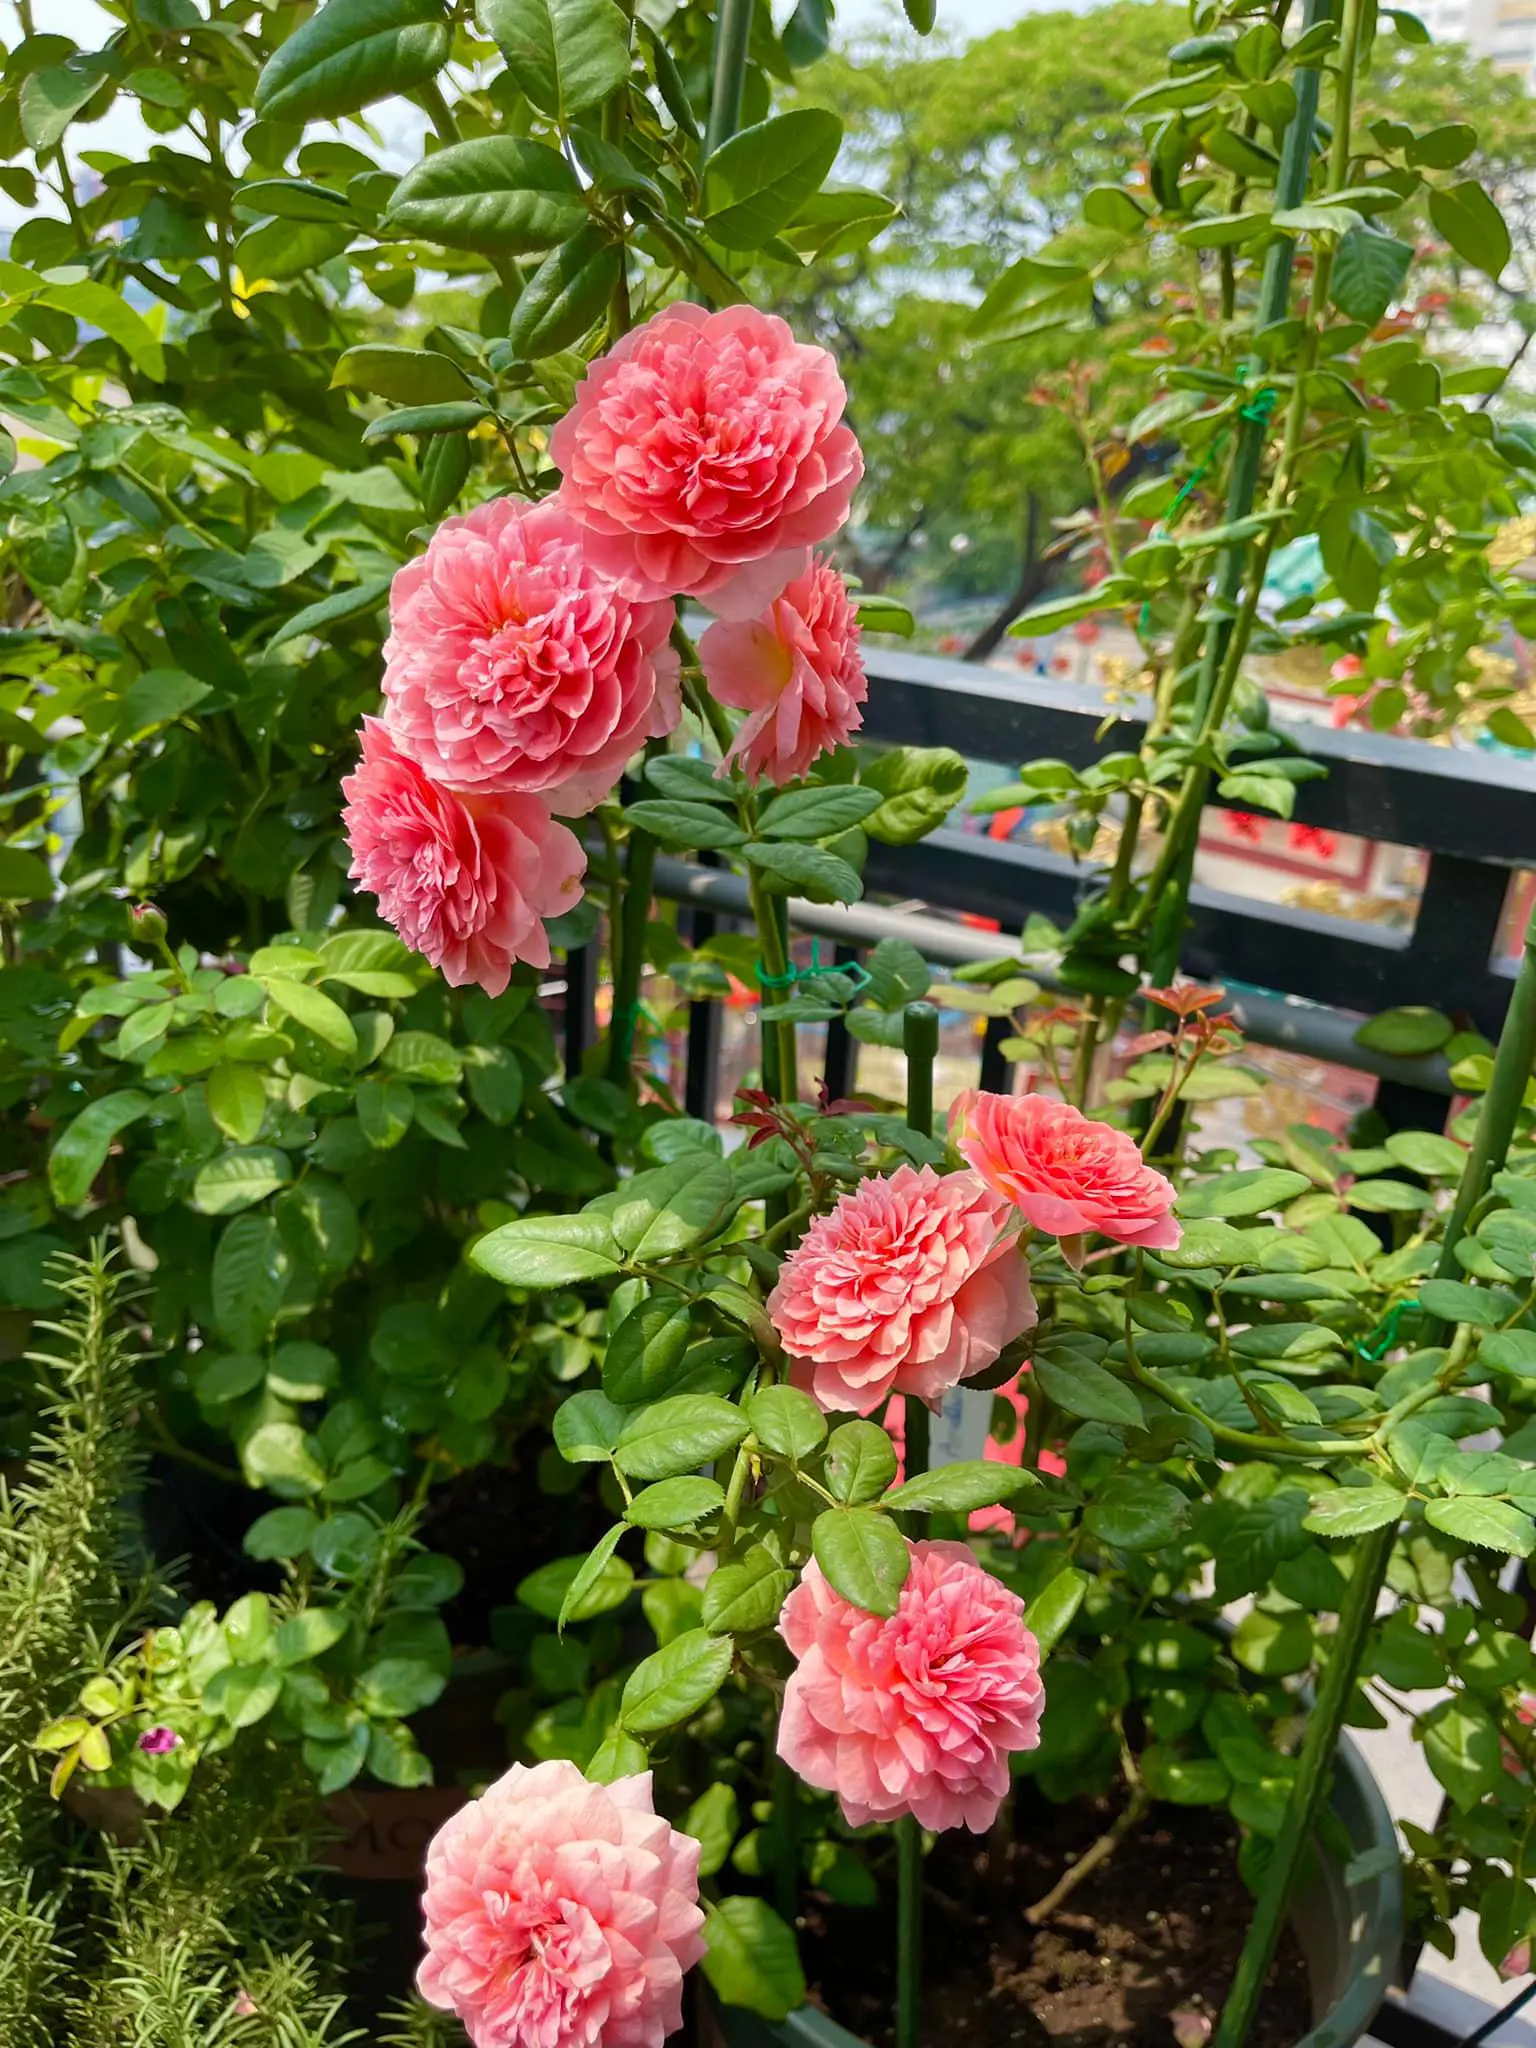 Vườn hoa hồng ngoại đẹp ngây ngất trên sân thượng giữa Sài thành của trai đẹp Sài Gòn - Ảnh 6.